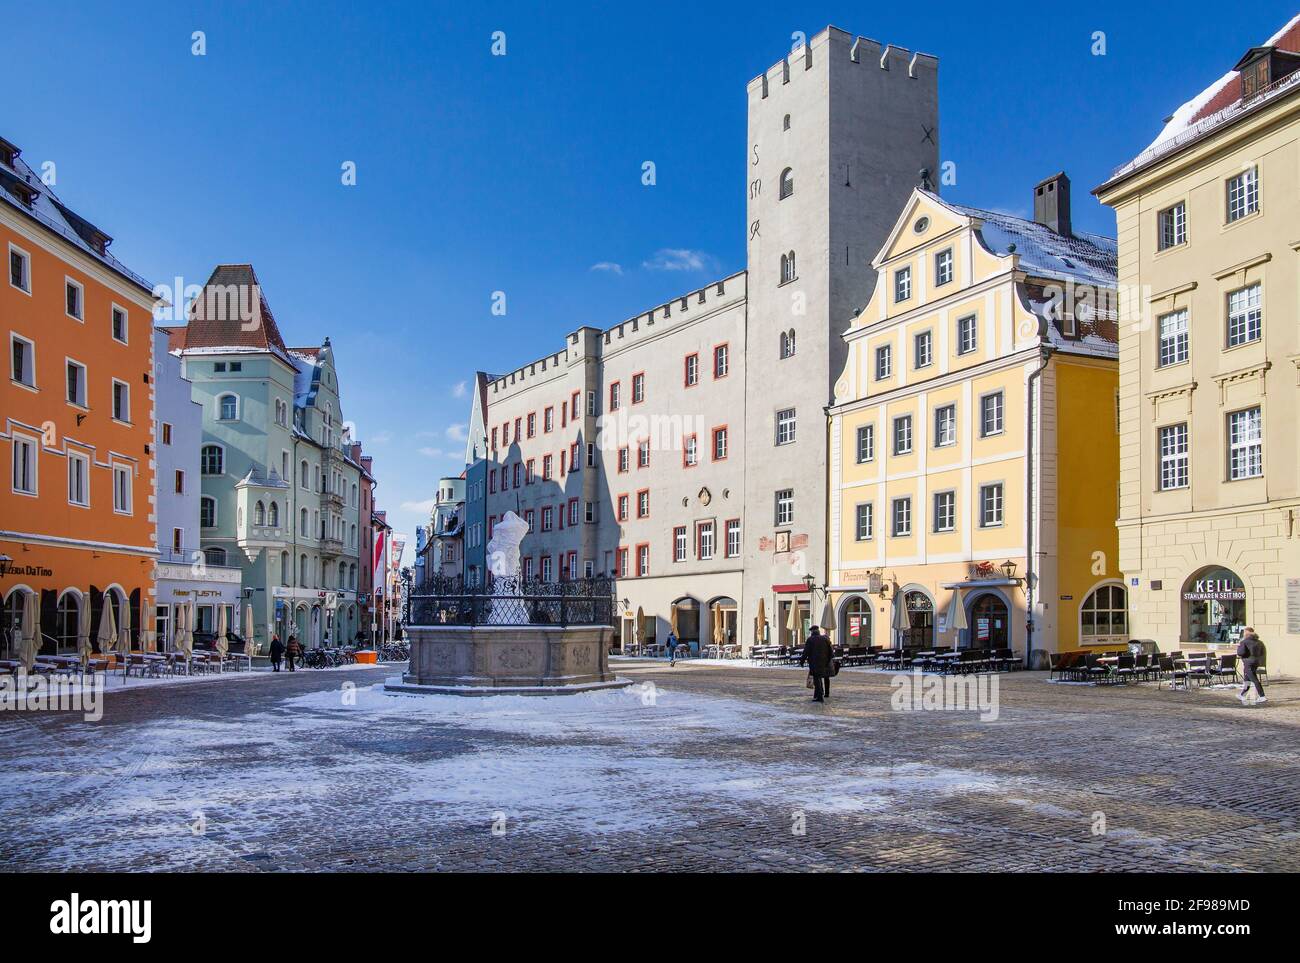 Haidplatz con il castello patrizio Goldenes Kreuz nel centro storico, Ratisbona, Danubio, Palatinato superiore, Baviera, Germania, Patrimonio dell'Umanità dell'UNESCO Foto Stock